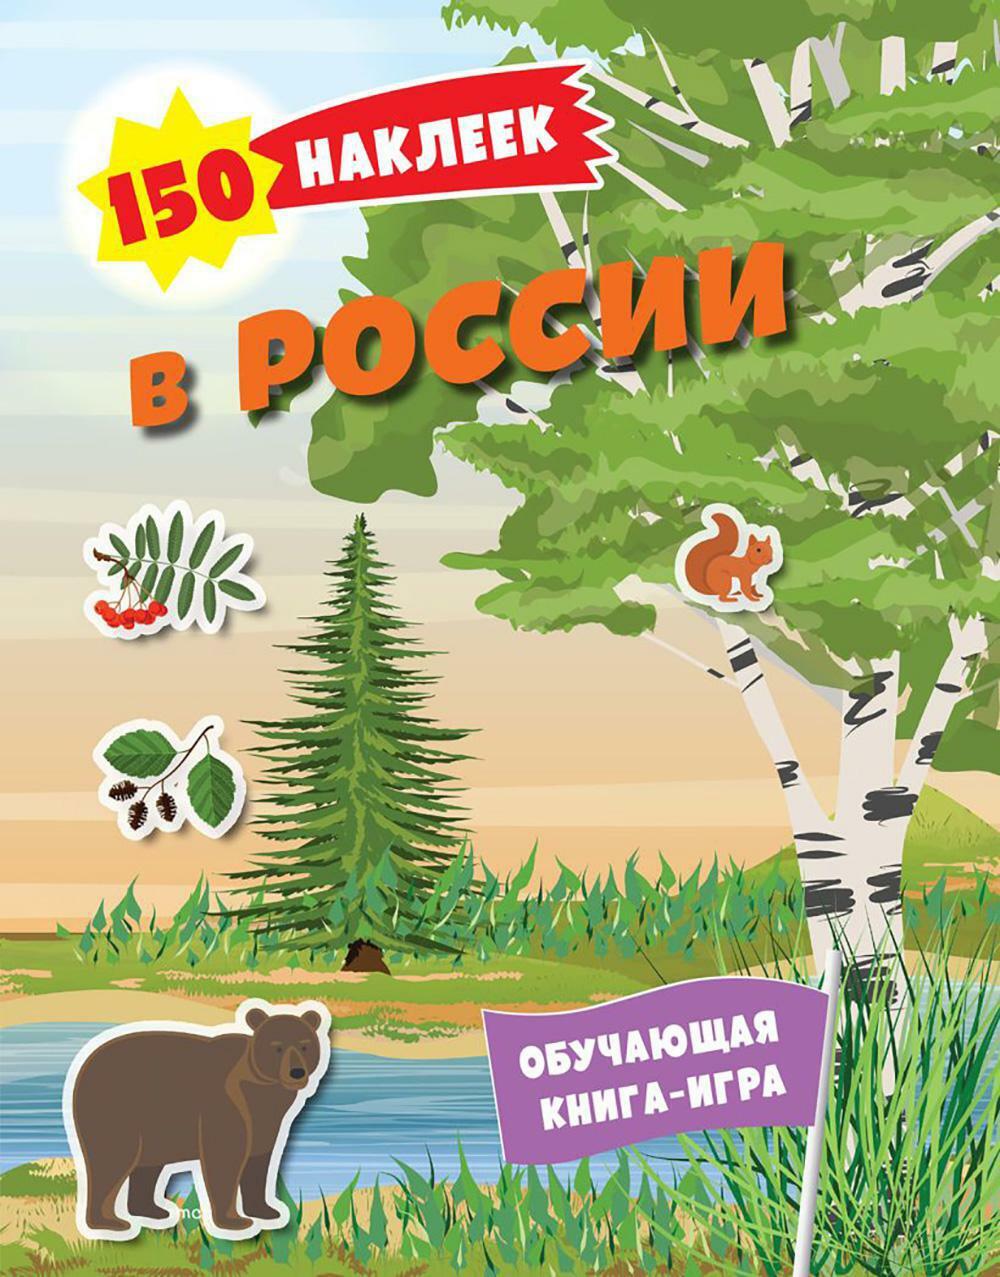 В России. 150 наклеек: обучающая книга-игра